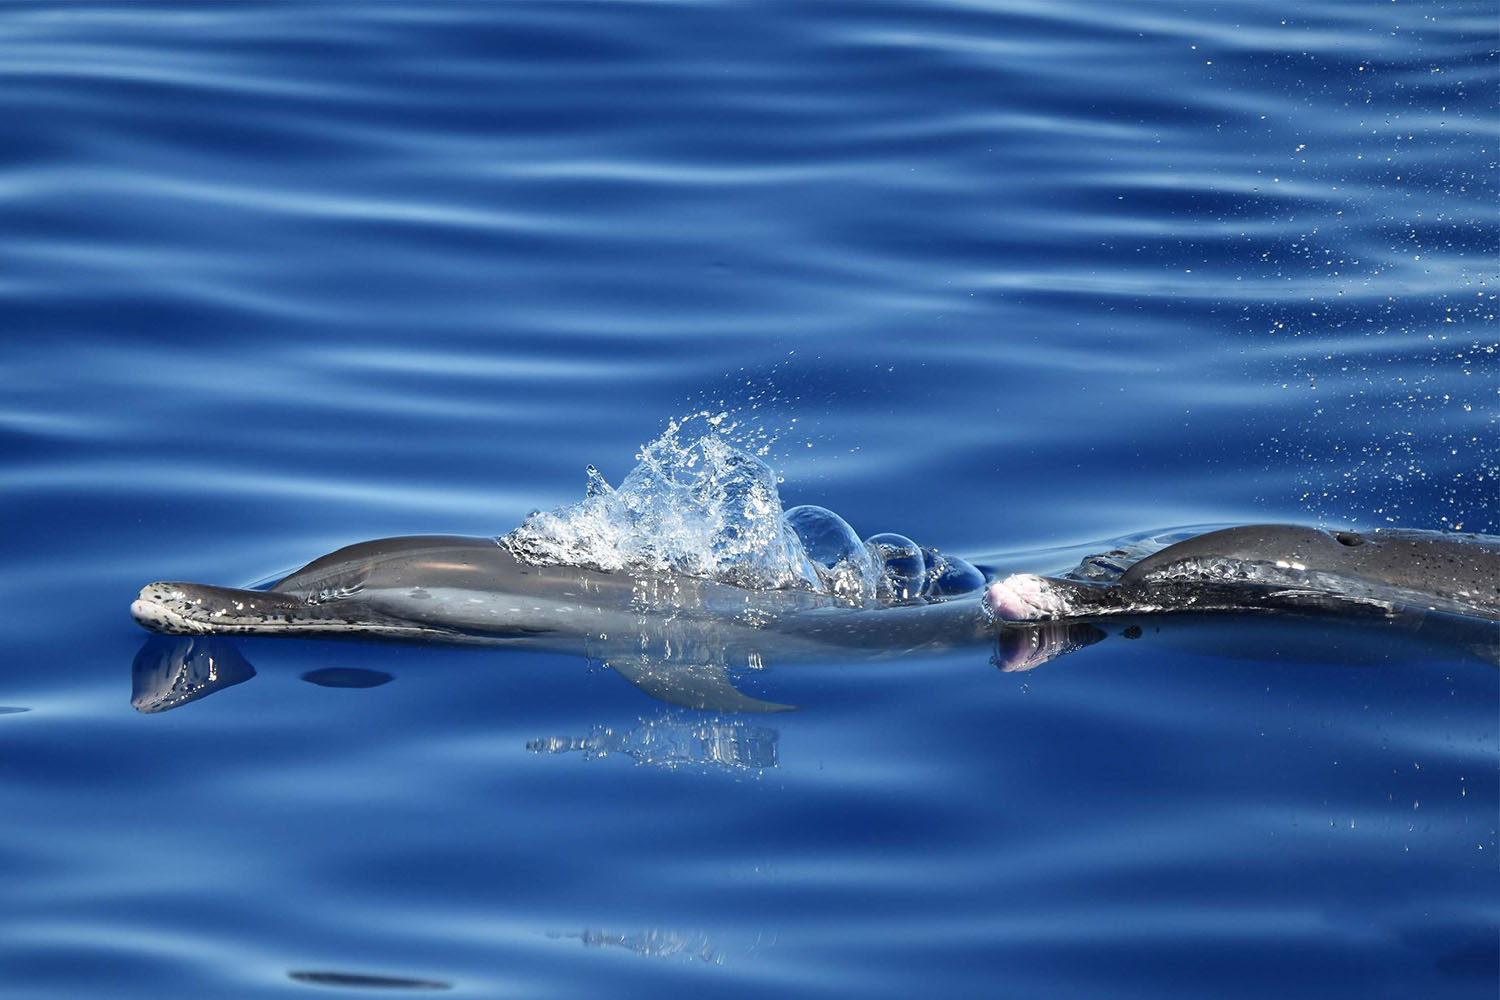 voyage scientifique cetaces et faune marine de guadeloupe copyright Cedric Millon 37